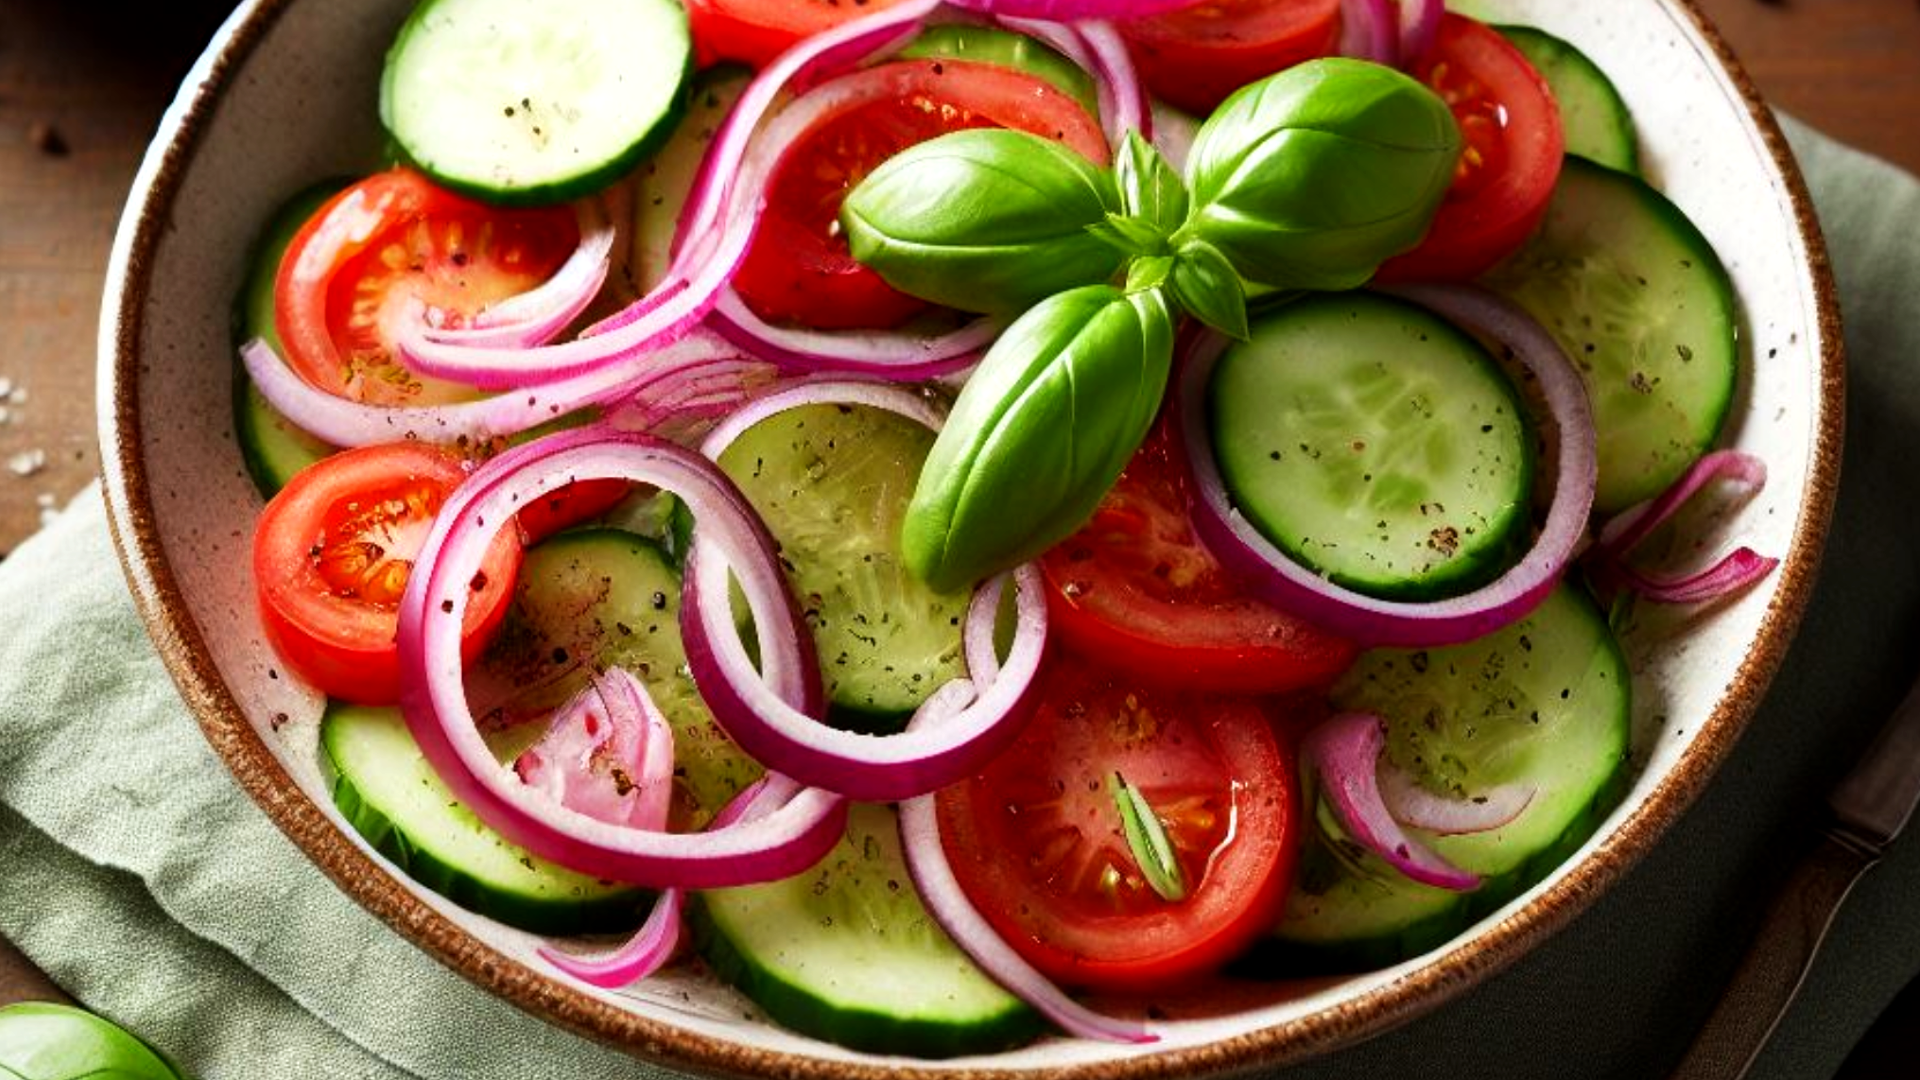 Cucumber Tomato Onion Salad Recipe in Vinegar